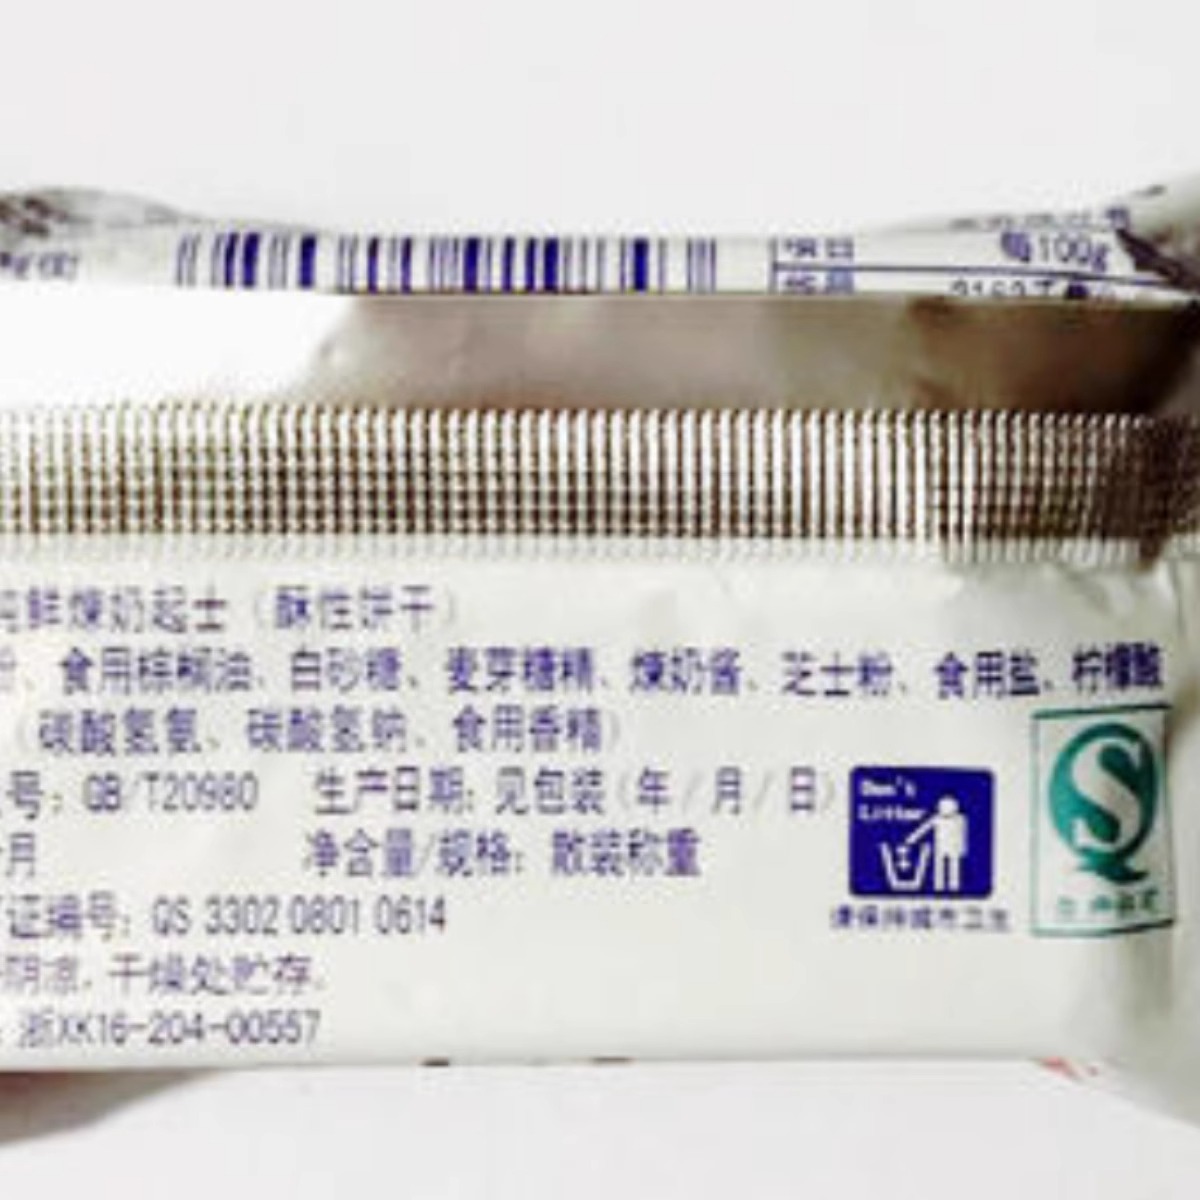 上海莱莎牛轧糖饼干纯鲜炼奶起士2500g散装饼干休闲小吃零食品